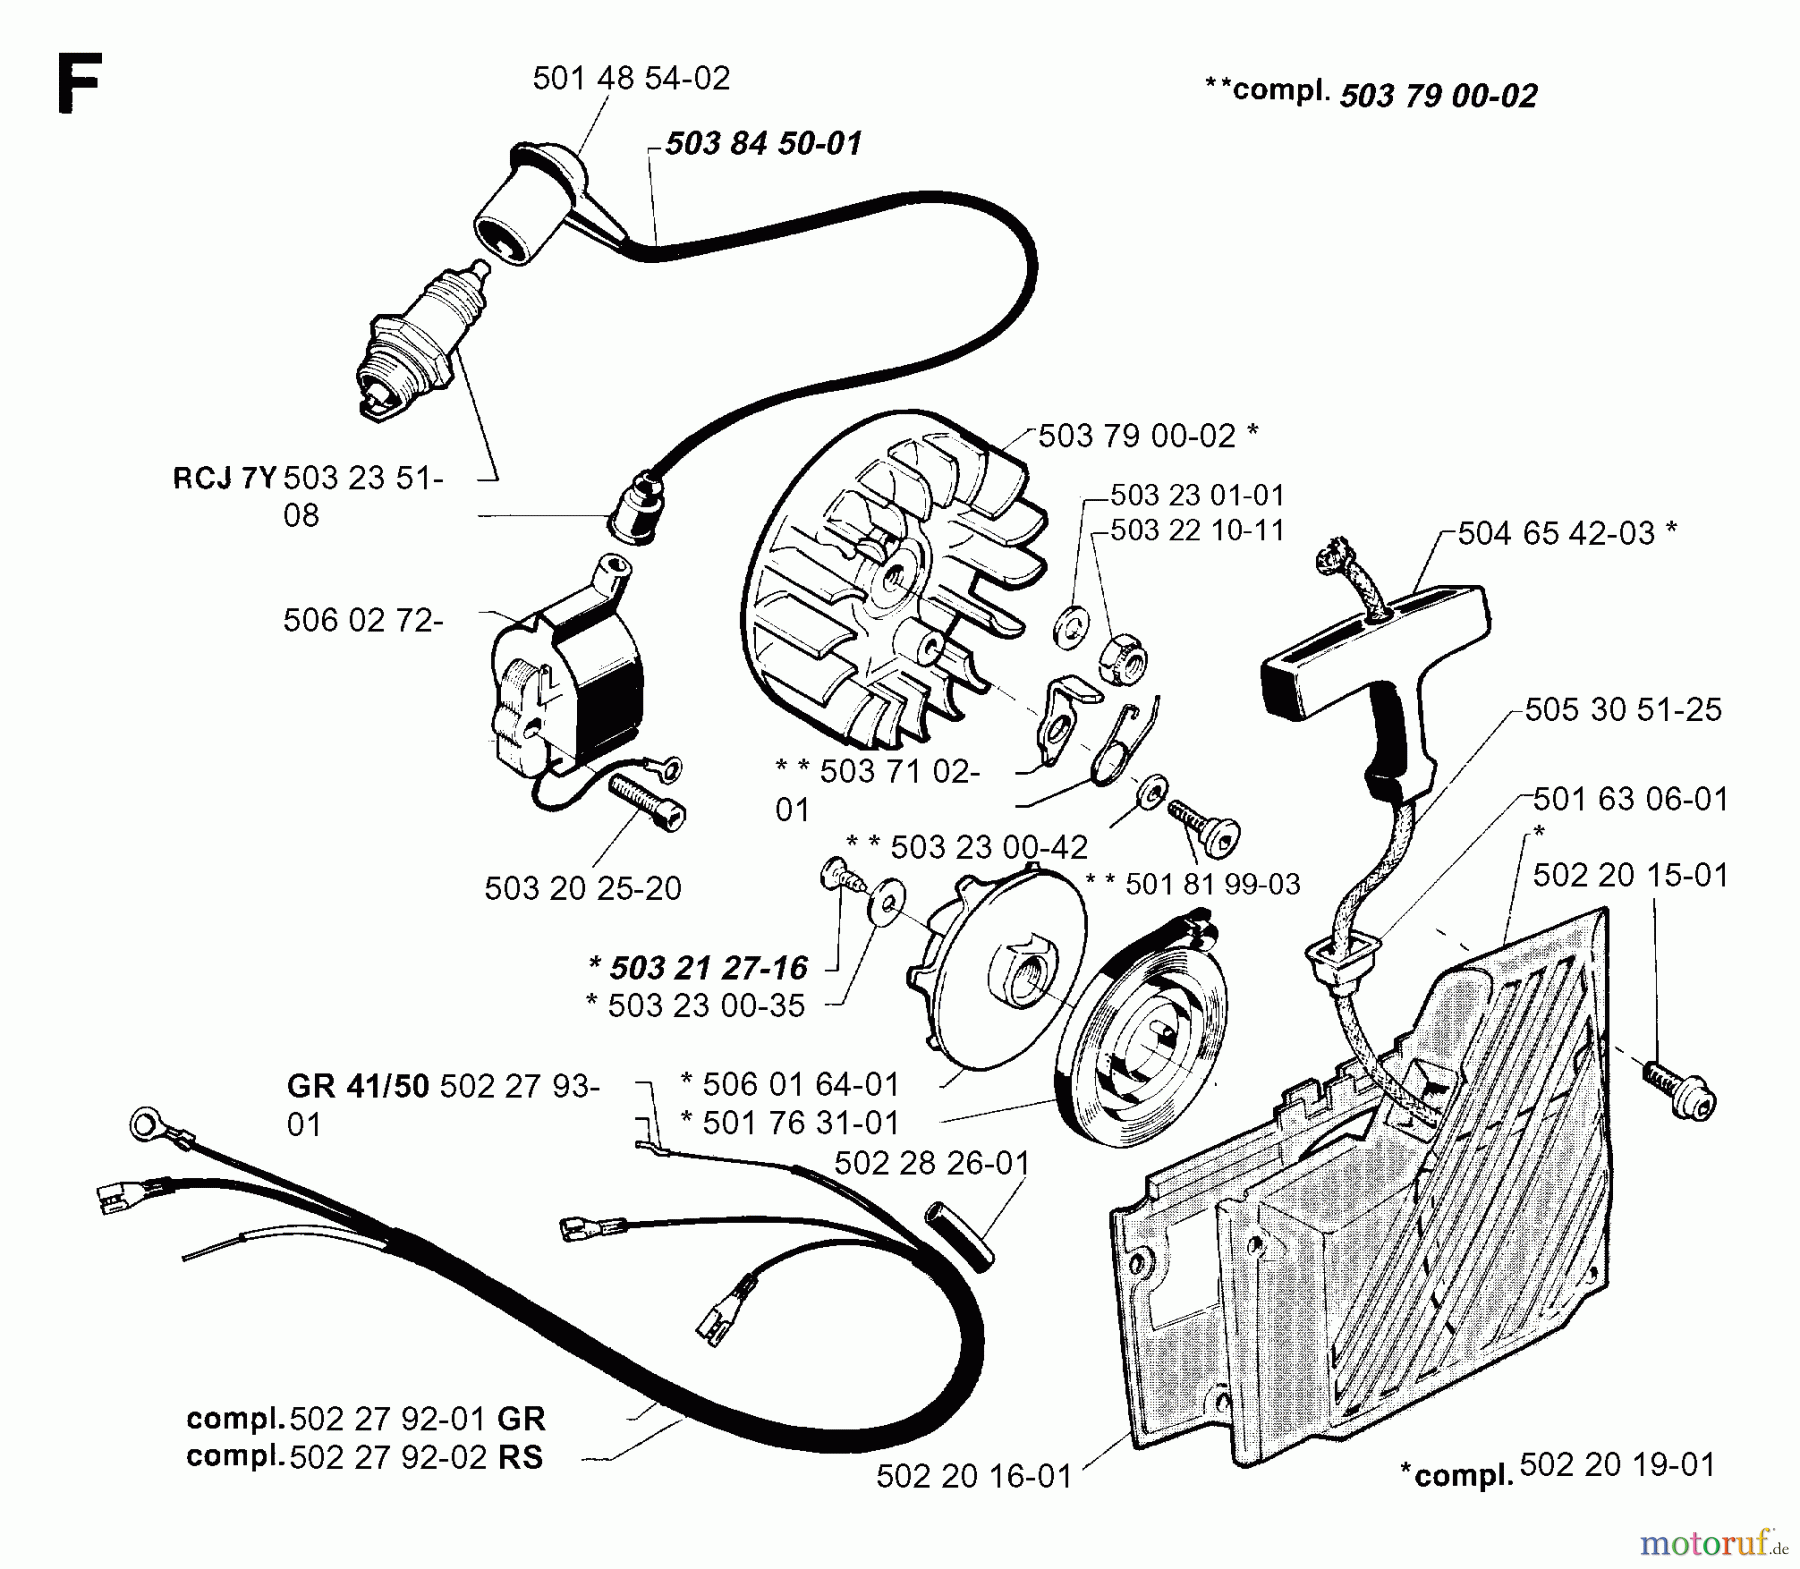  Jonsered Motorsensen, Trimmer GR50 - Jonsered String/Brush Trimmer (1996-10) STARTER